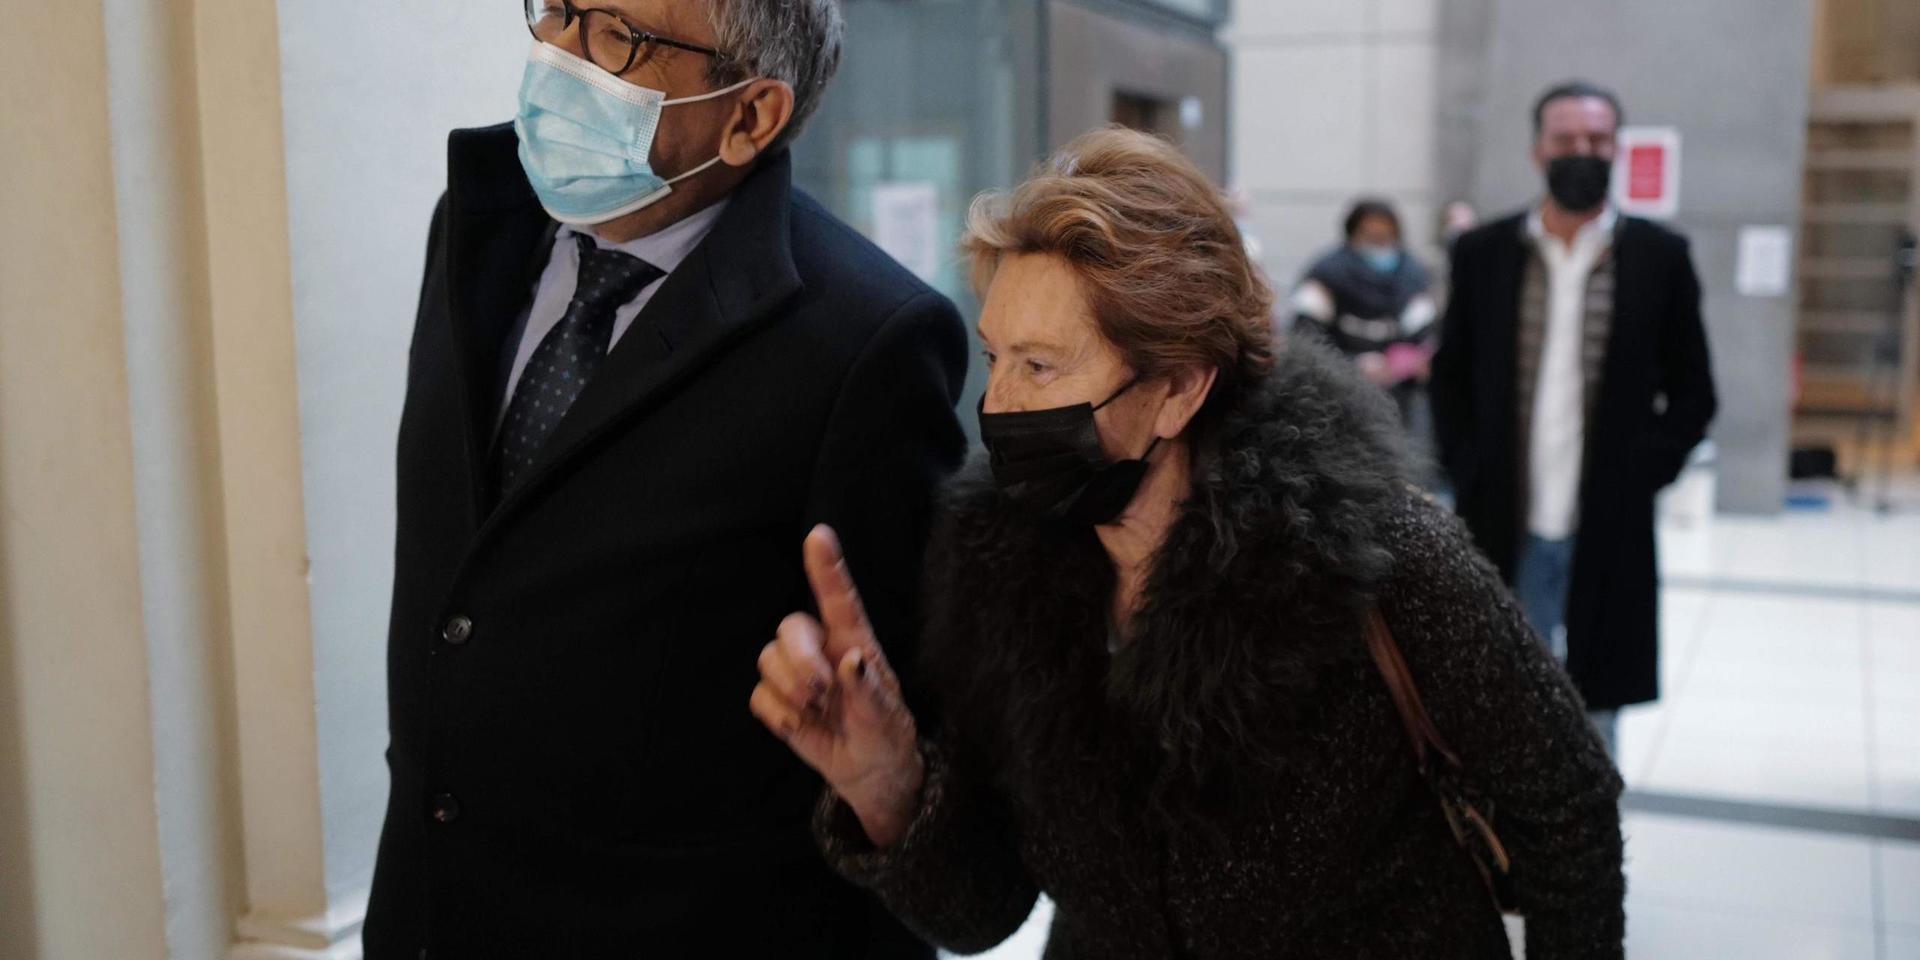 Jacqueline Veyrac tillsammans med sin advokat Luc Febbraro på väg till rätten. Arkivbild.